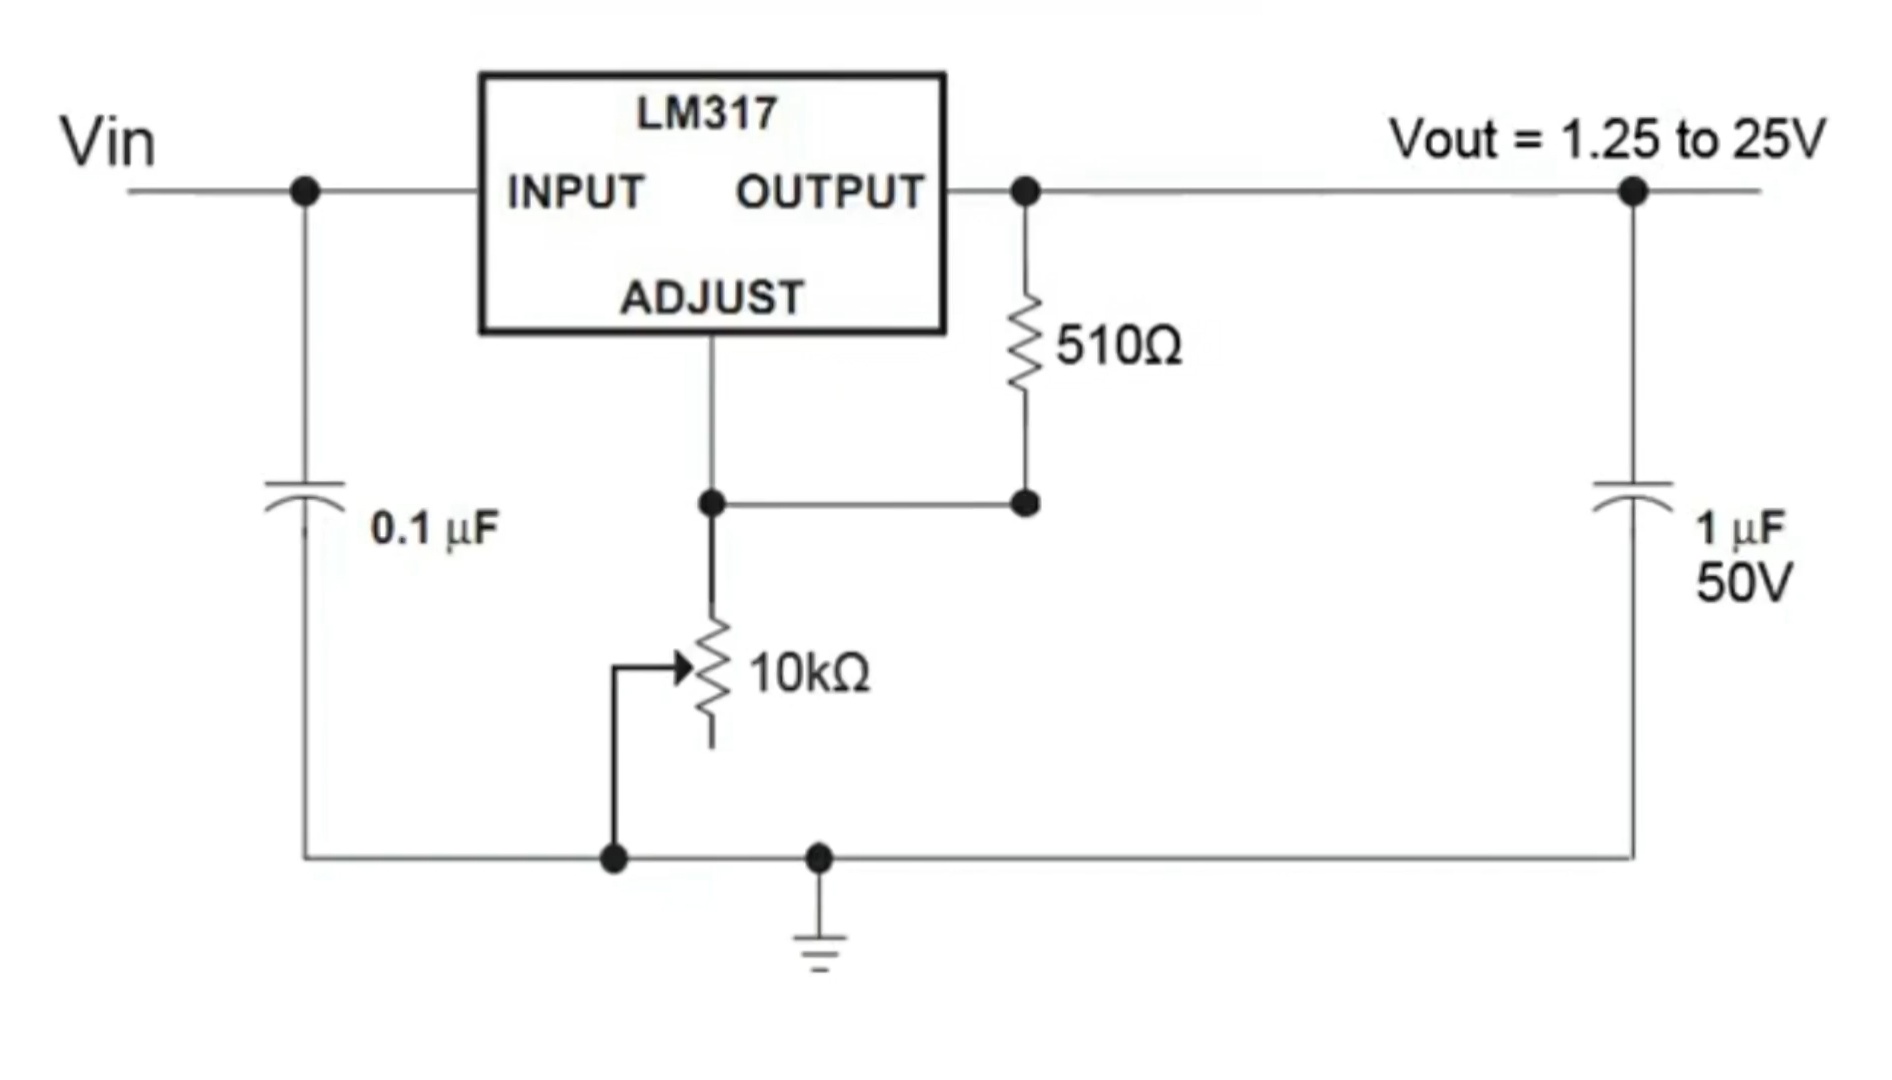 Понизить напряжение регулятором. Lm317 стабилизатор схема включения. Стабилизатор напряжения на 12 вольт на lm317 схема. Lm317 схема включения с регулировкой напряжения. Линейный регулируемый стабилизатор на lm317.